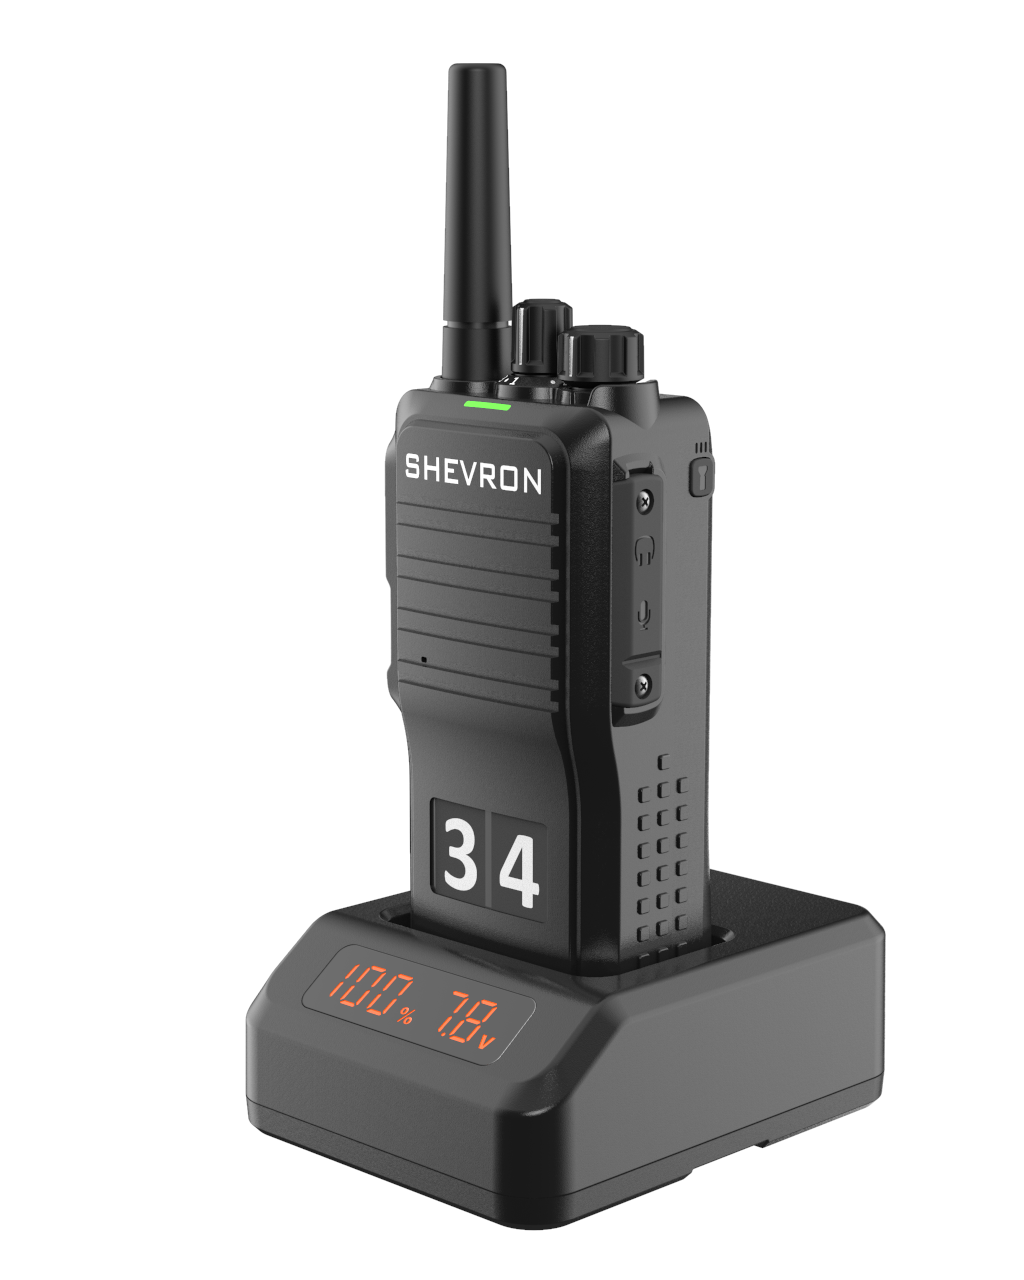 Рация Шеврон Т-34 V4 - профессиональная радиостанция для работы в VHF - диапазоне частот, предназначенная как для любительского, так и для профессионального использования.